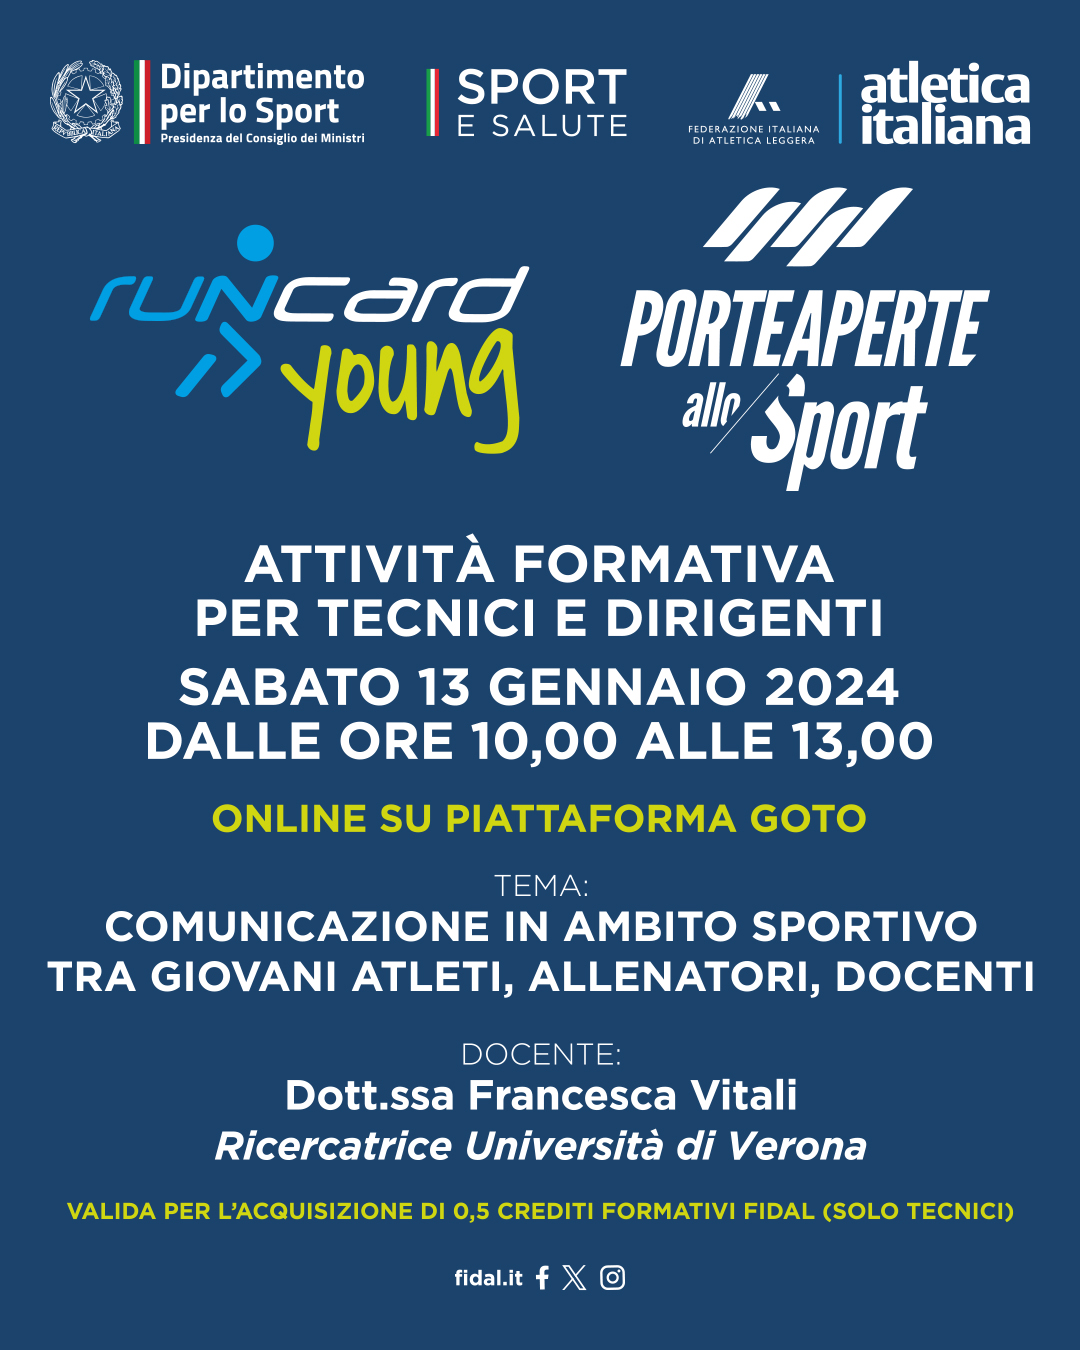 1080x1350 px Post Runcard Young Porte aperte allo sport Attivita formativa tecnici dirigenti 13 gen 2024 online